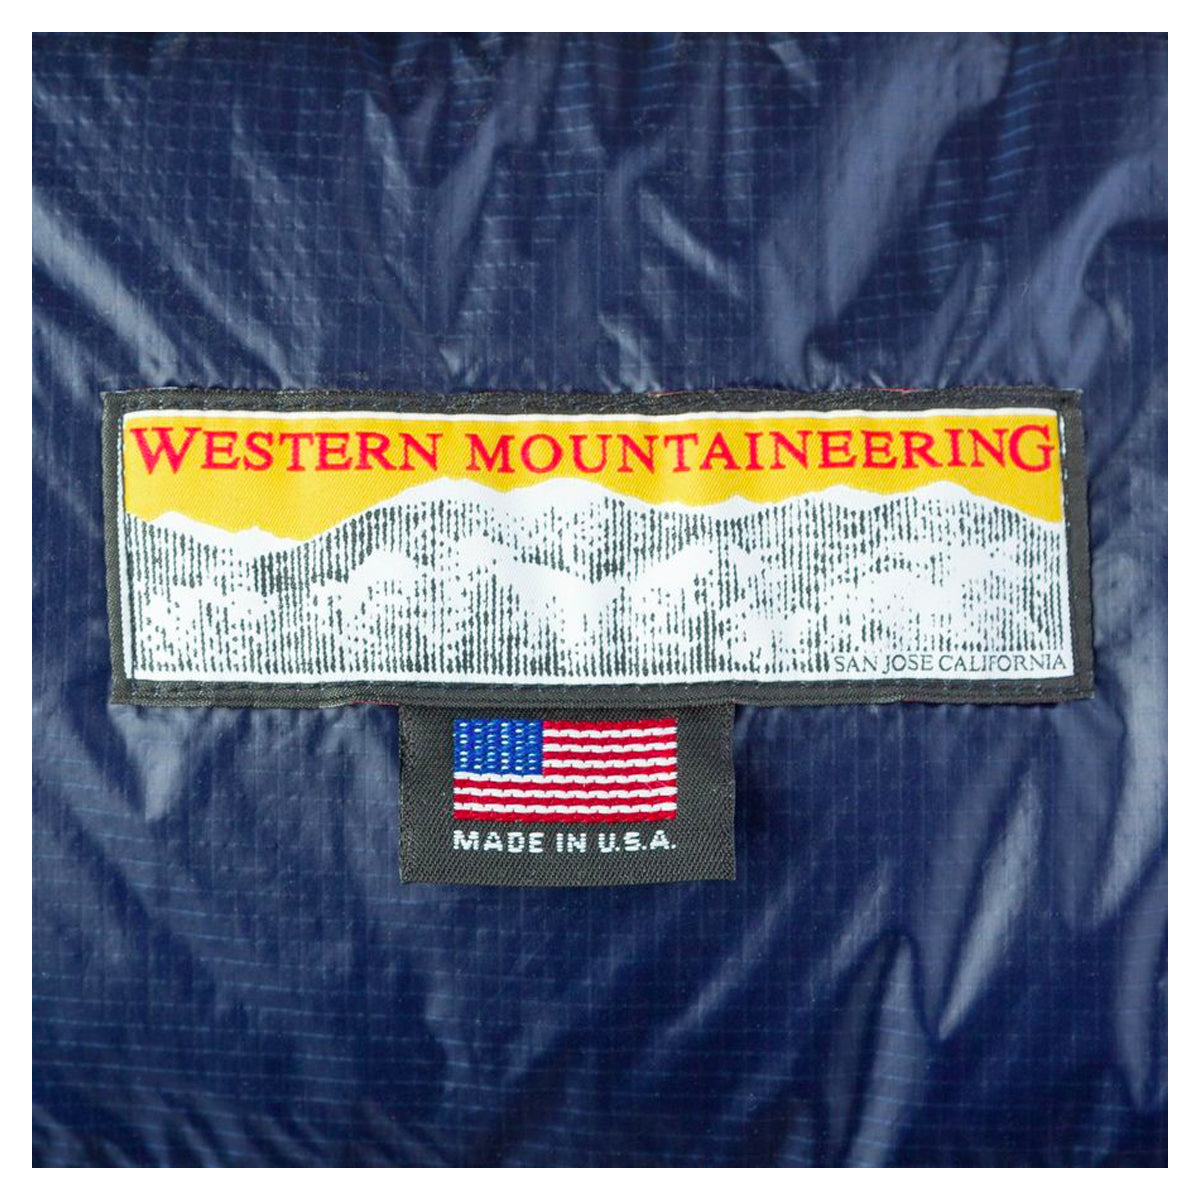 Western Mountaineering Megalite 30° Sleeping Bag in Western Mountaineering Megalite 30° Sleeping Bag - goHUNT Shop by GOHUNT | Western Mountaineering - GOHUNT Shop